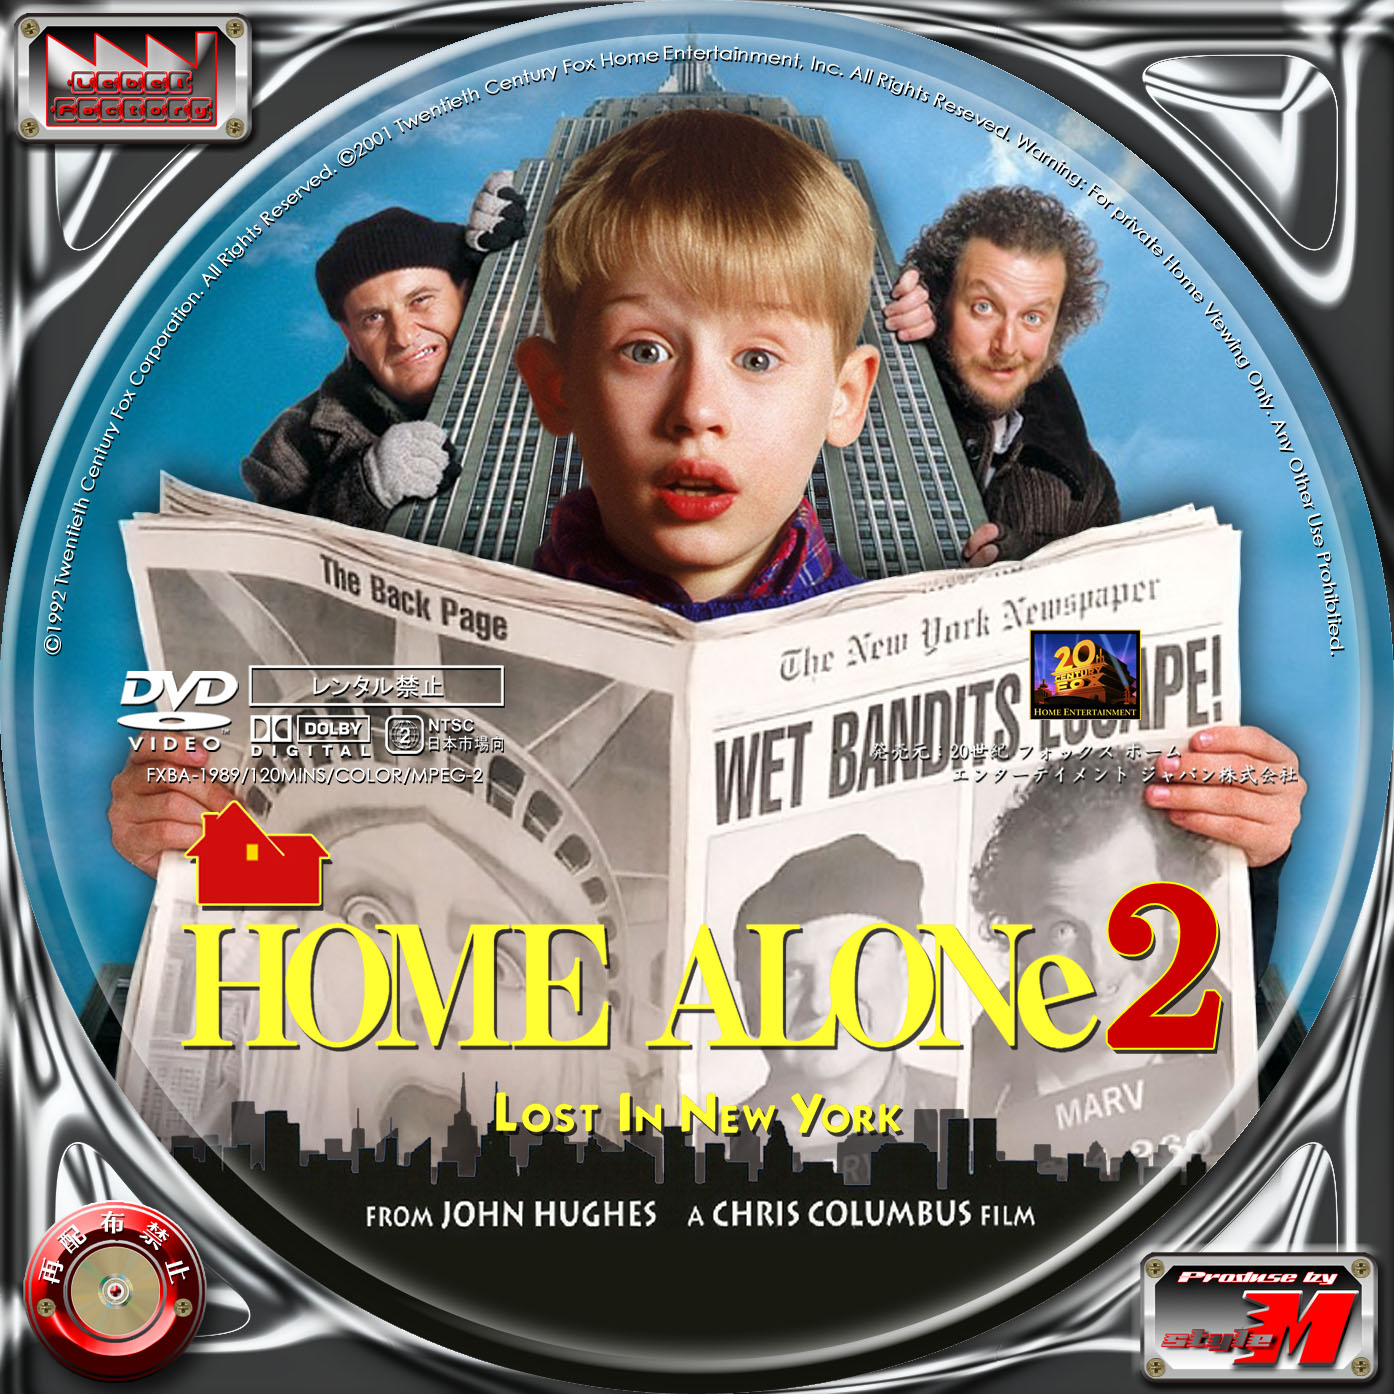 ホーム・アローン2 HOME ALONE2:LOST IN NEW YORK Label Factory M style  ＜DVD・Blu-rayレーベル（ラベル）＞